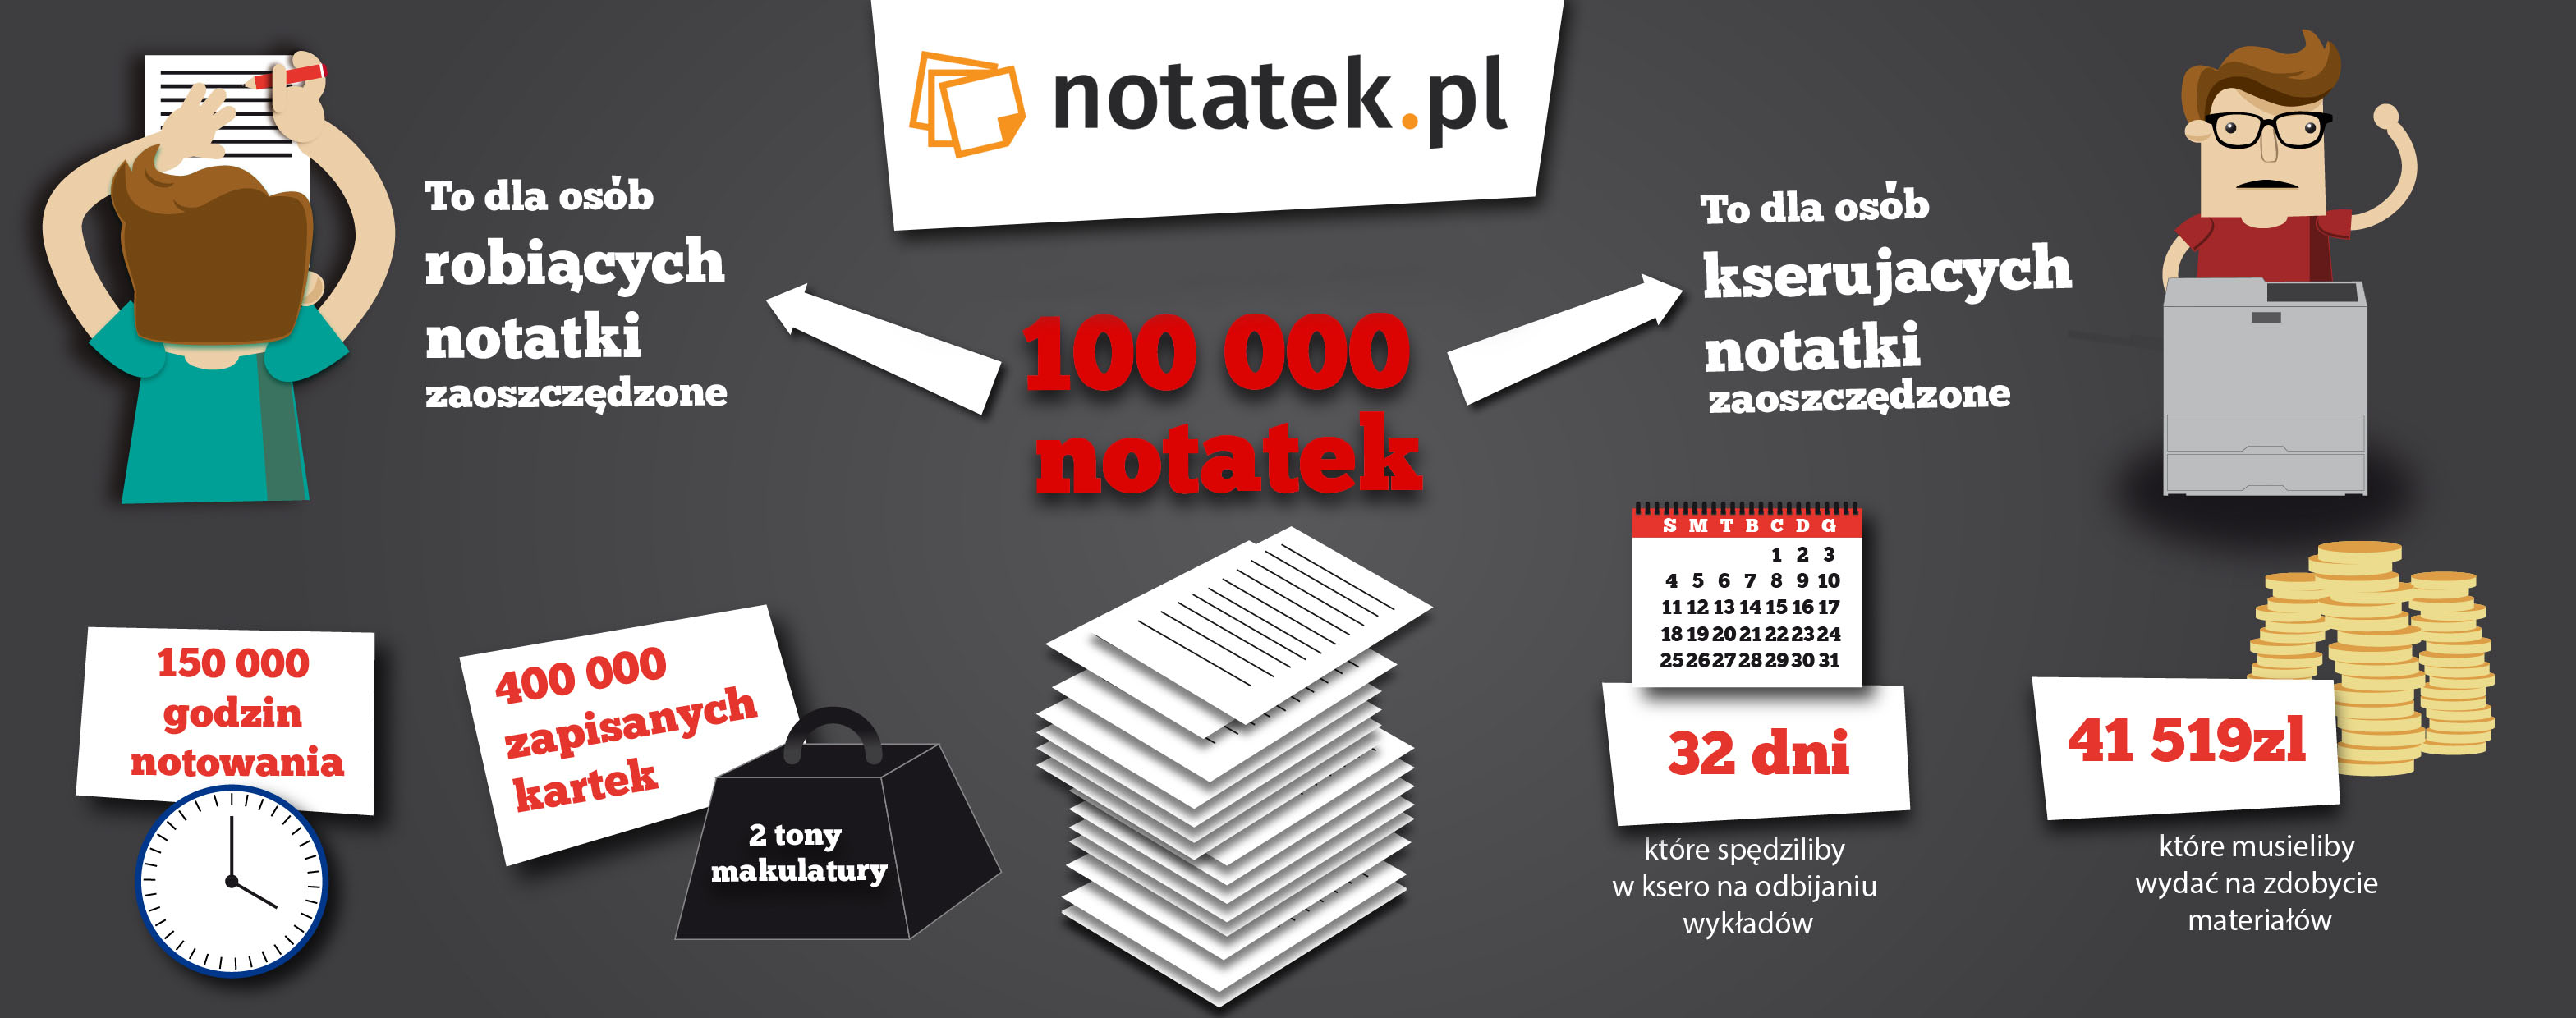 Notatek.pl - Materiały na studia: notatki, ćwiczenia, wykład